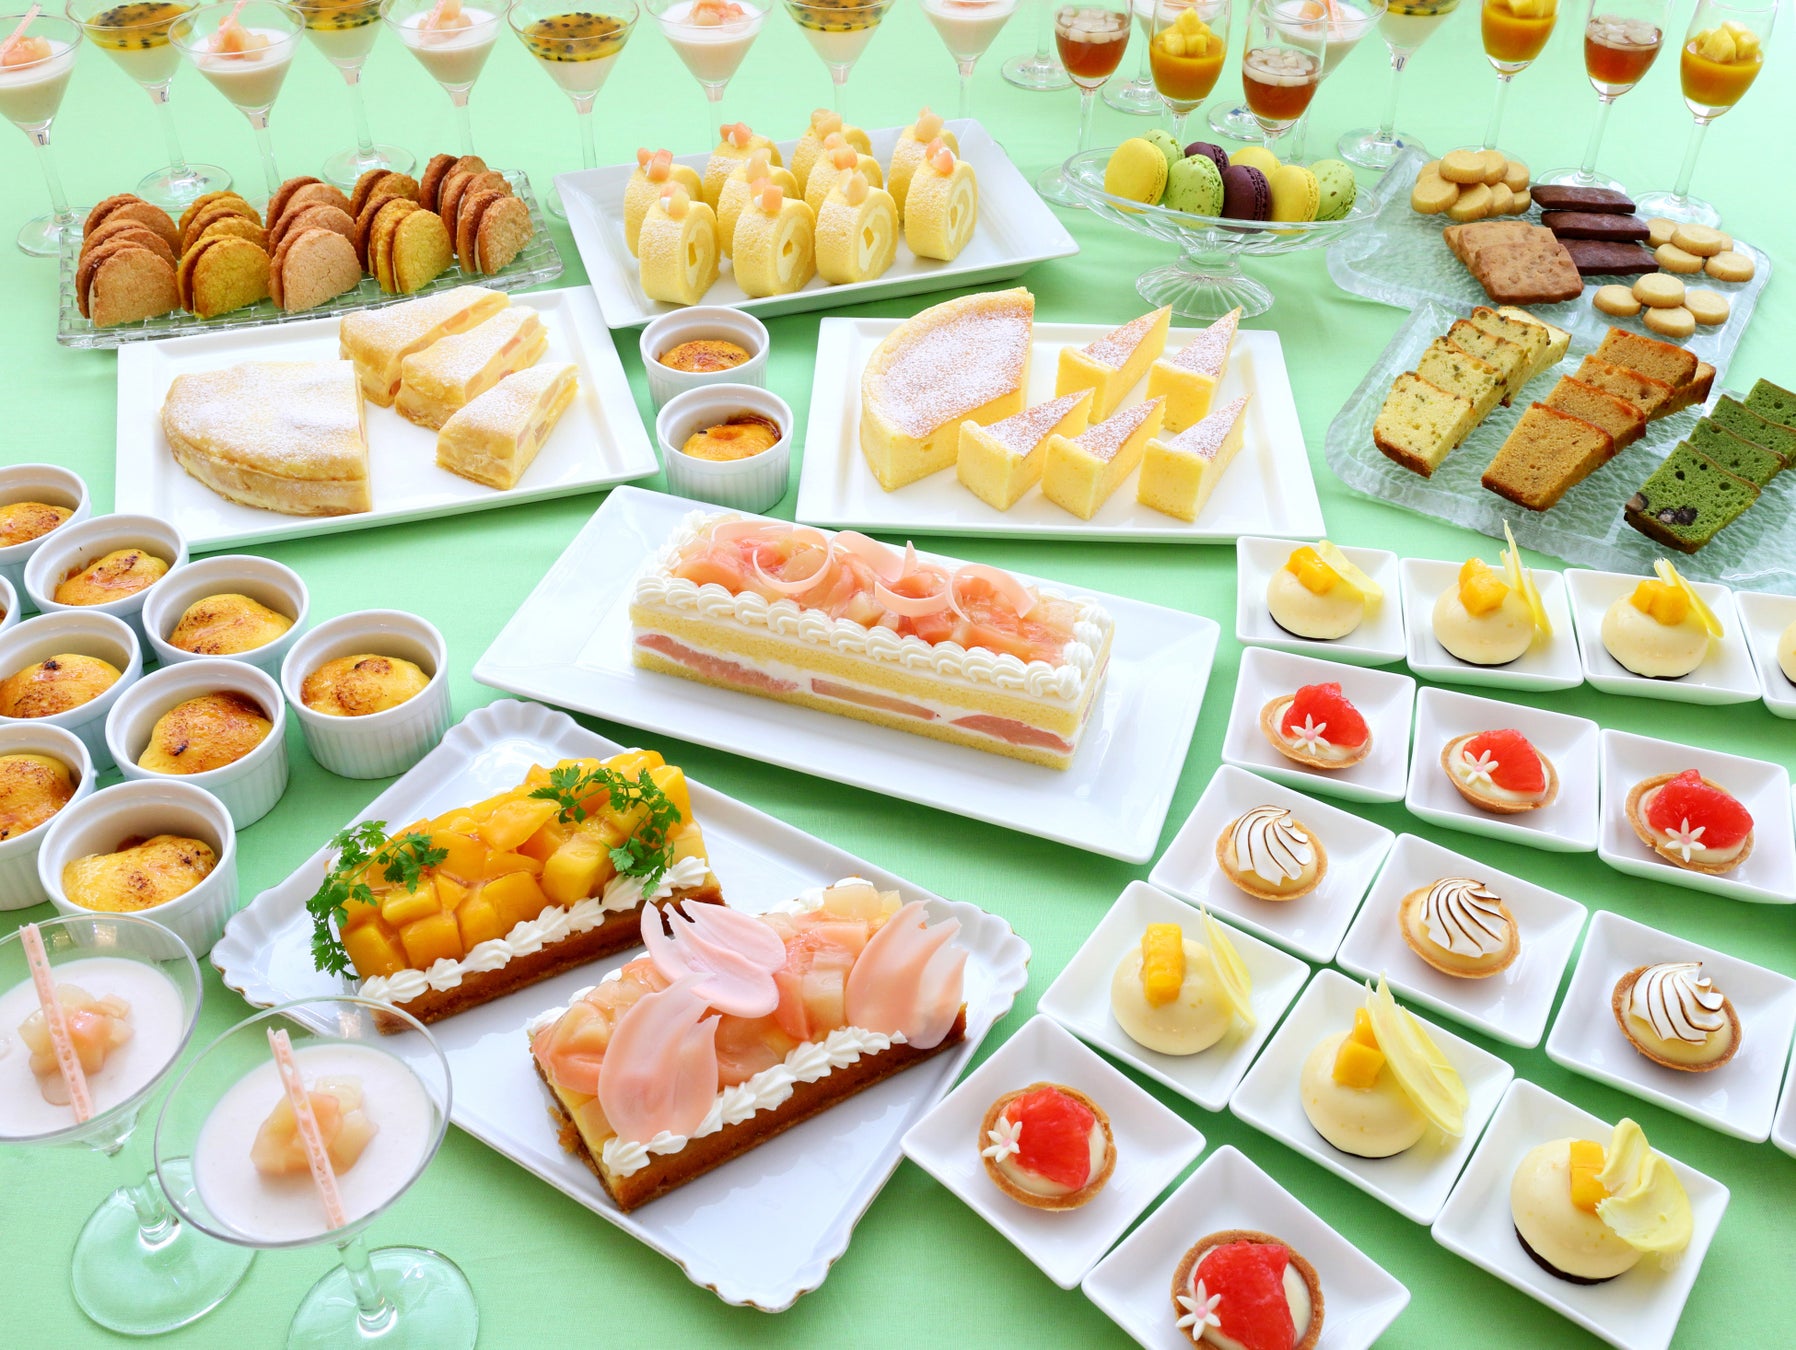 エシカルチーズケーキ専門店「cheesecake lab seed」　
瀬戸内レモンピールのレアチーズケーキを5月30日より販売